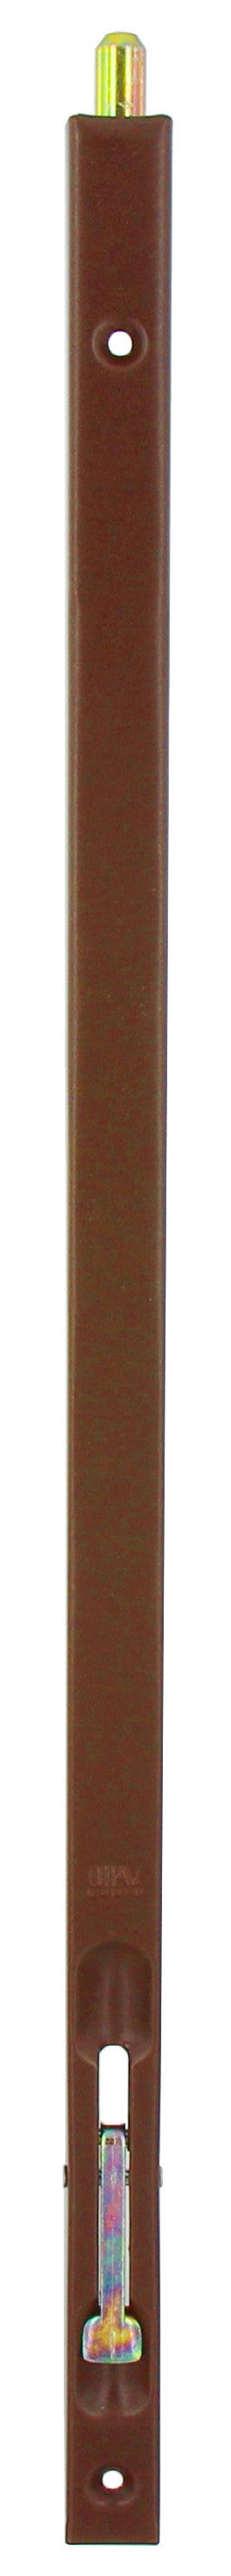 Bl catenaccio incasso bronzato 250 mm